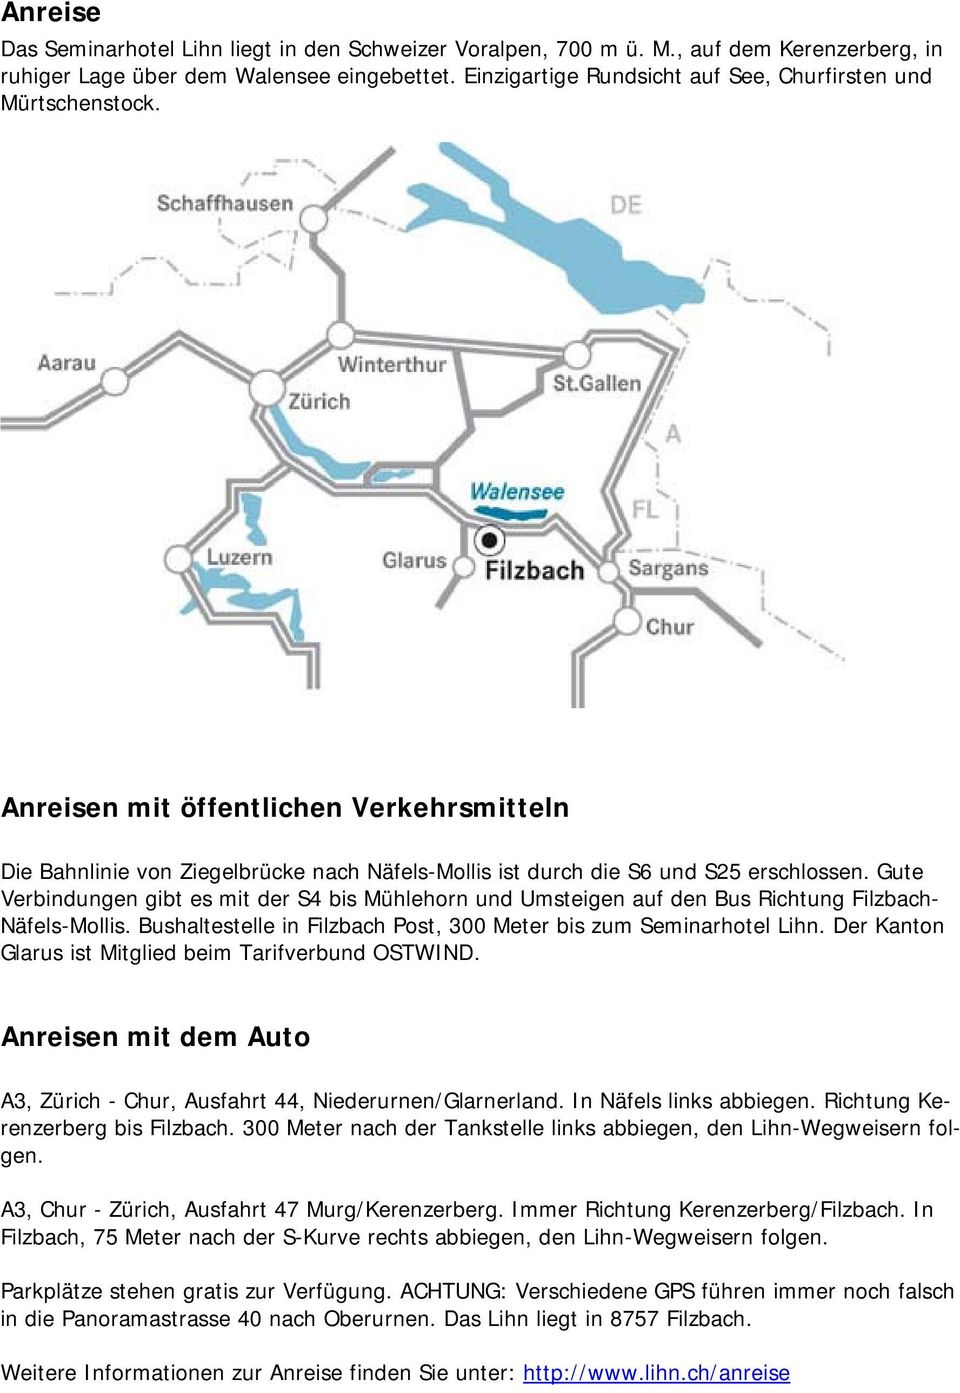 Gute Verbindungen gibt es mit der S4 bis Mühlehorn und Umsteigen auf den Bus Richtung Filzbach- Näfels-Mollis. Bushaltestelle in Filzbach Post, 300 Meter bis zum Seminarhotel Lihn.